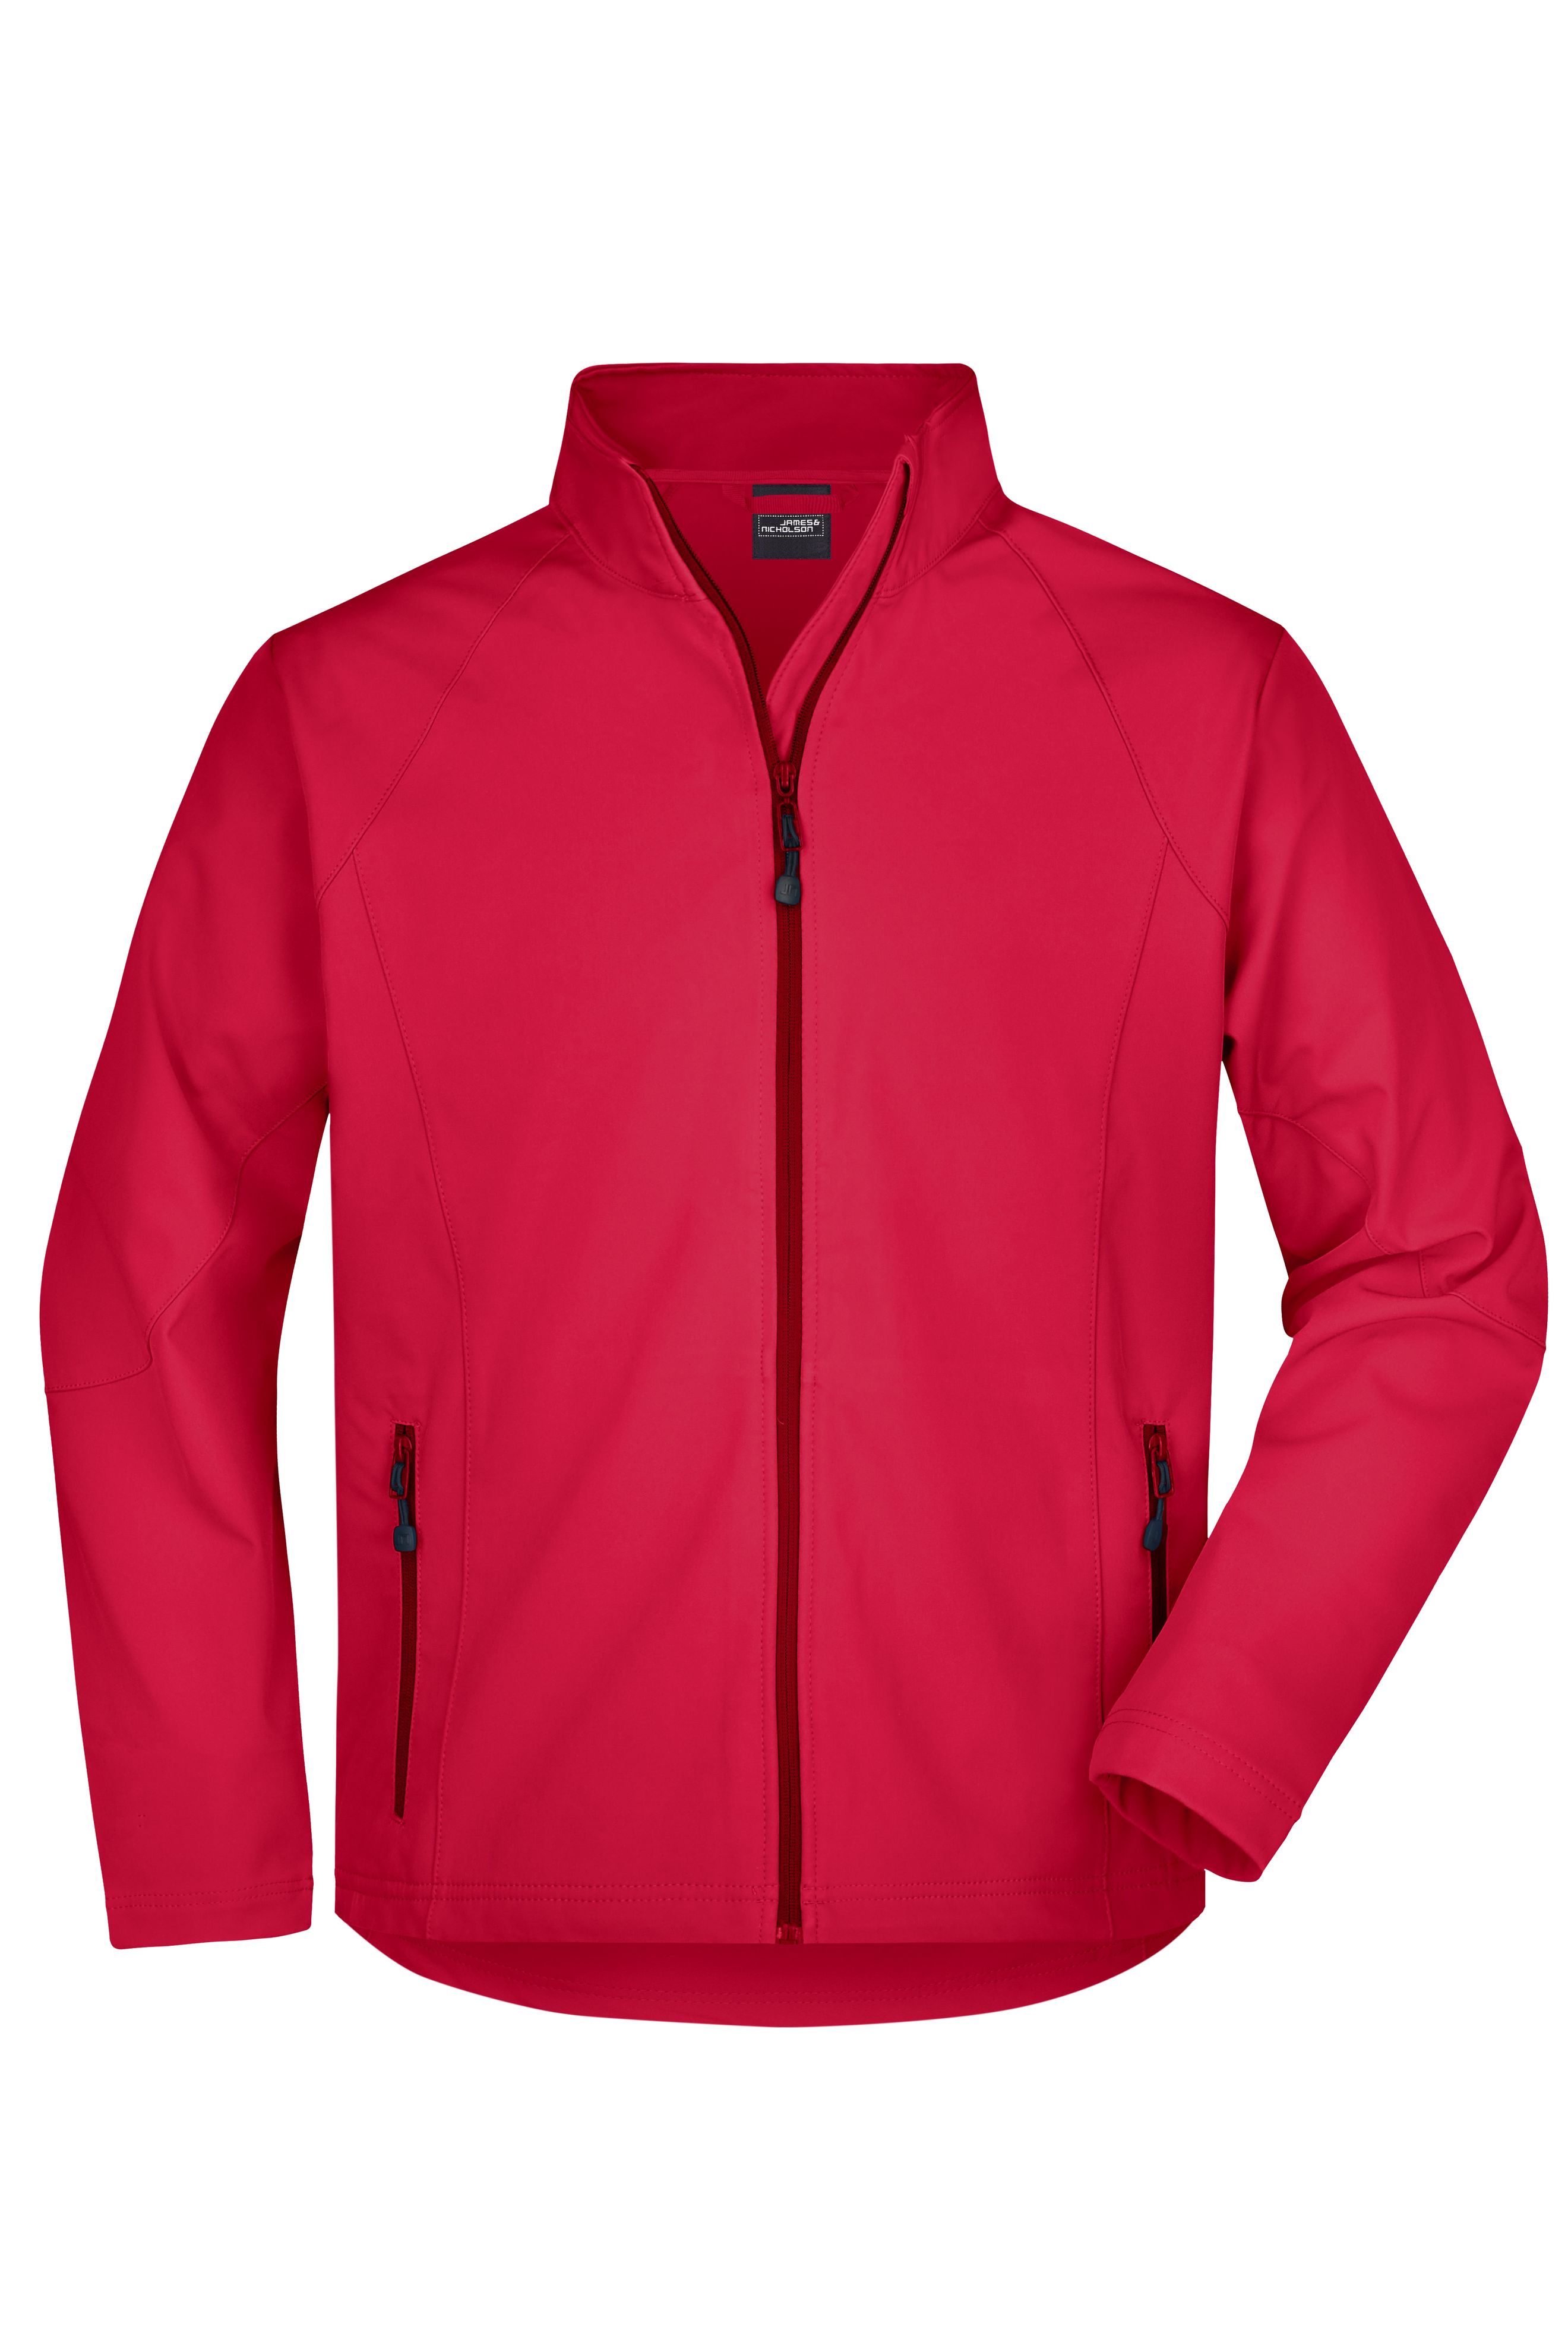 Men Men's Softshell Jacket Red-Daiber